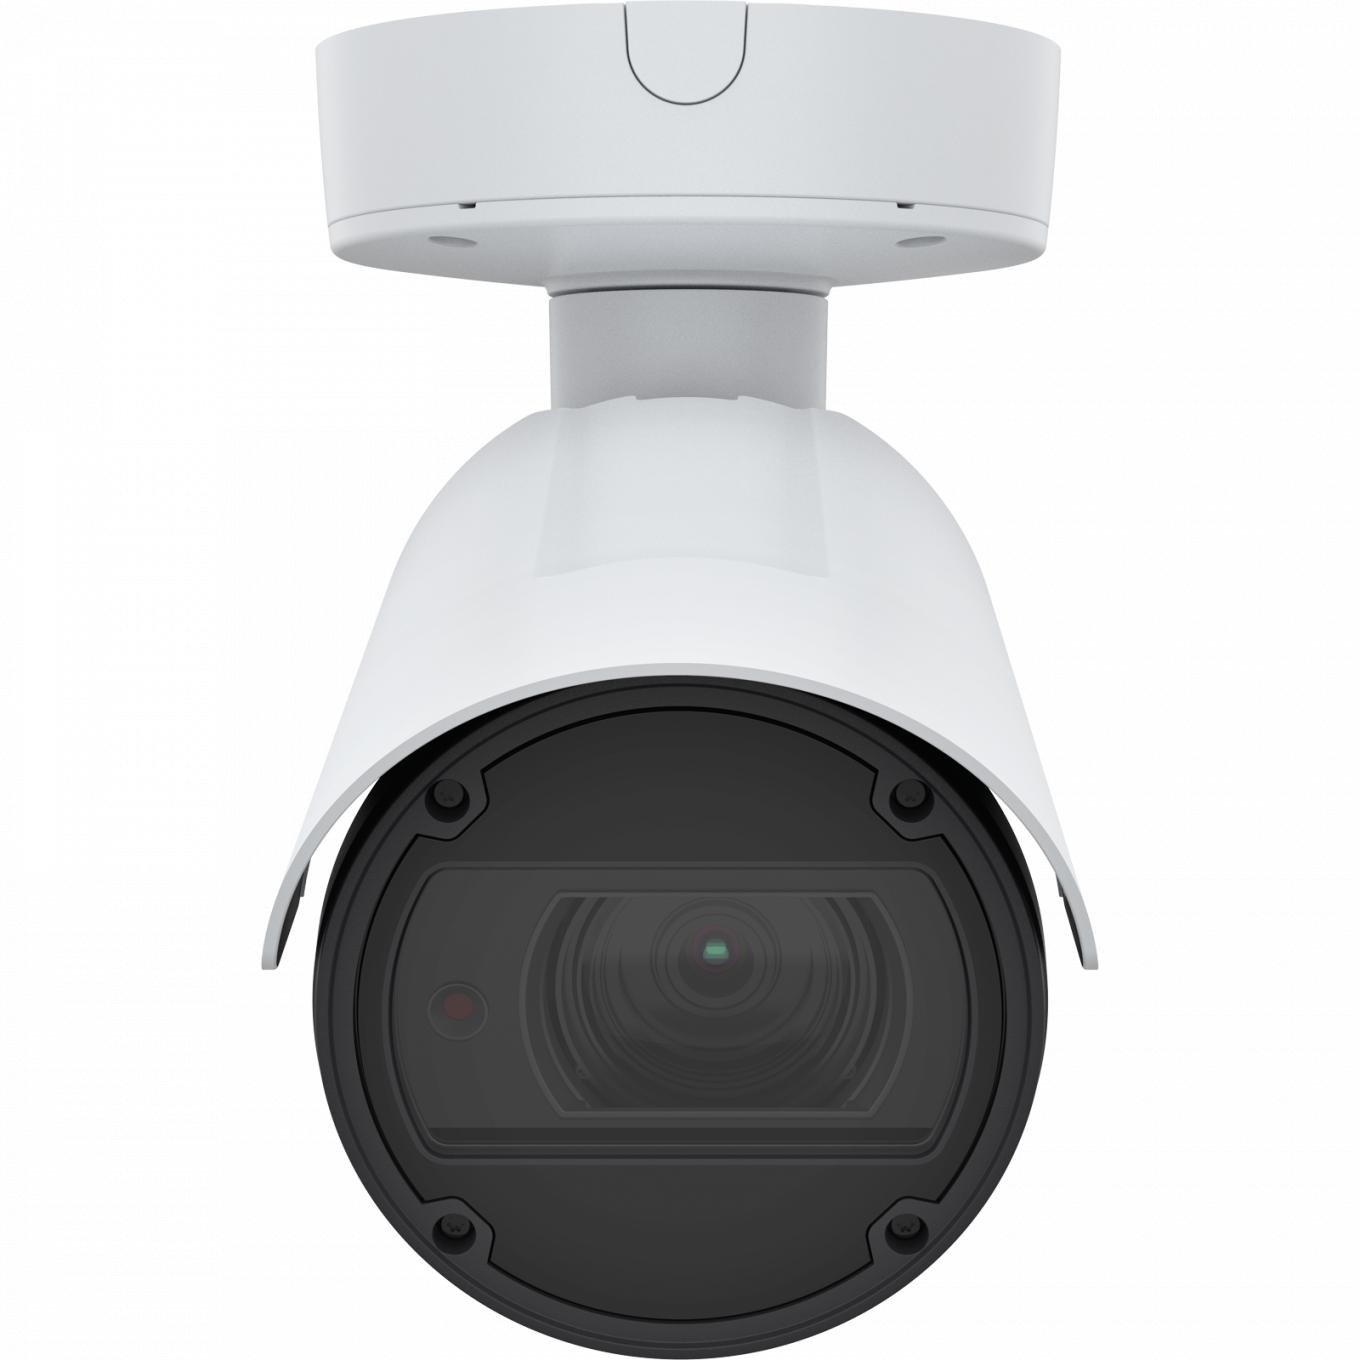 La AXIS Q1798-LE IP Camera tiene Zipstream y Lightfinder. El producto se muestra con vista frontal.